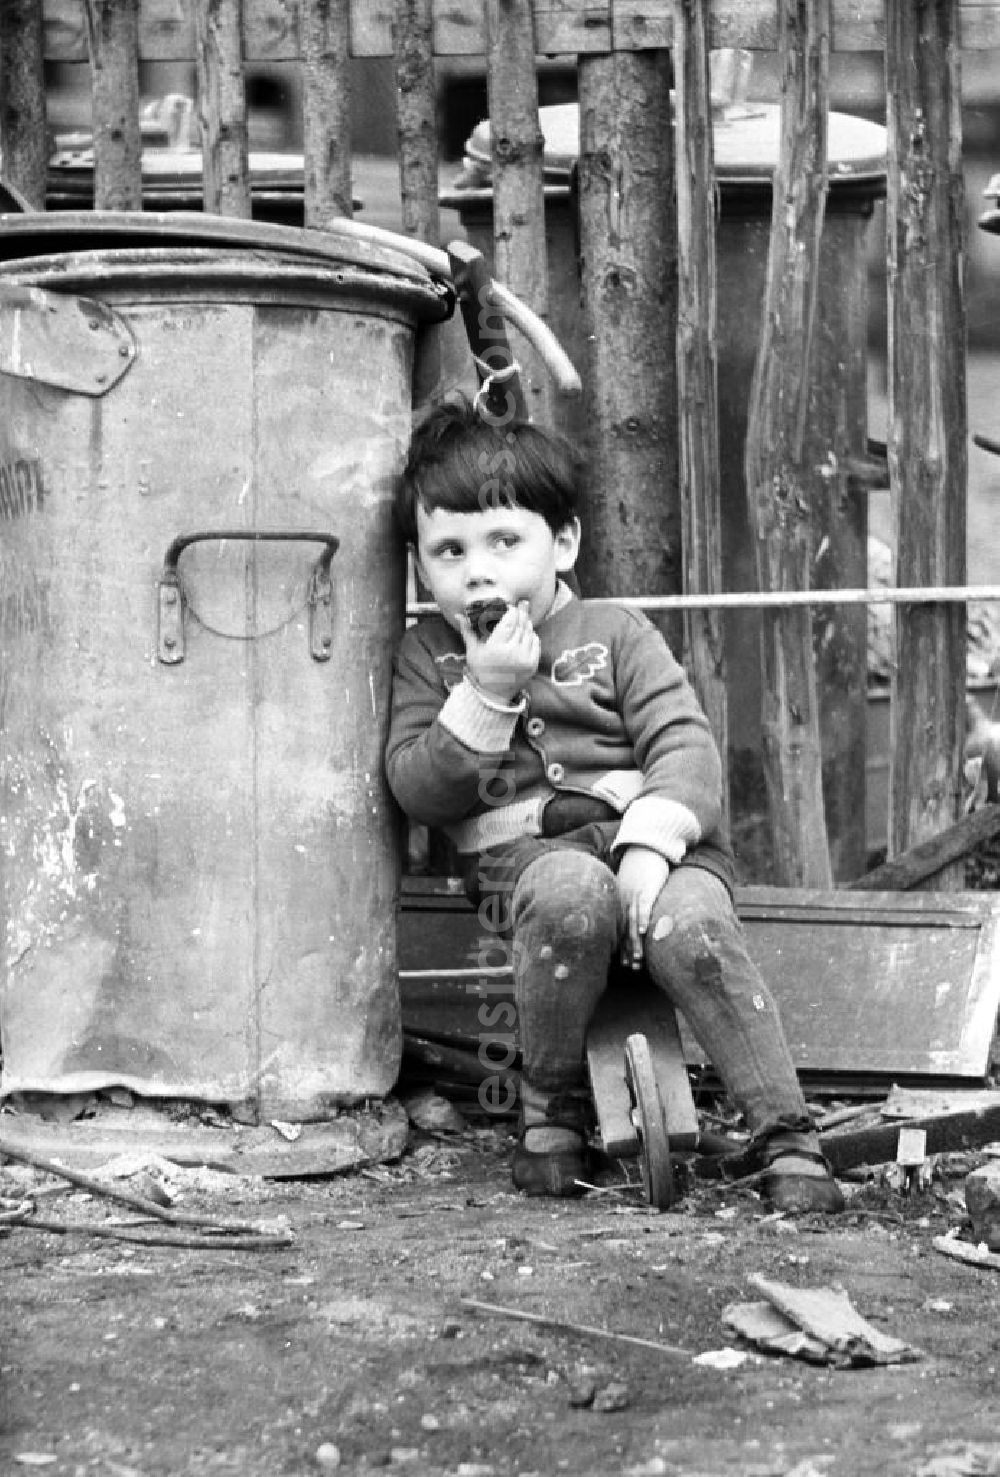 Leipzig: Ein Kind sitzt auf seinem Holzroller in einer dreckigen Ecke neben einer alten Mülltonne. Den Jungen scheint der Müll nicht zu stören - genüßlich beißt er in ein Stück Kuchen.